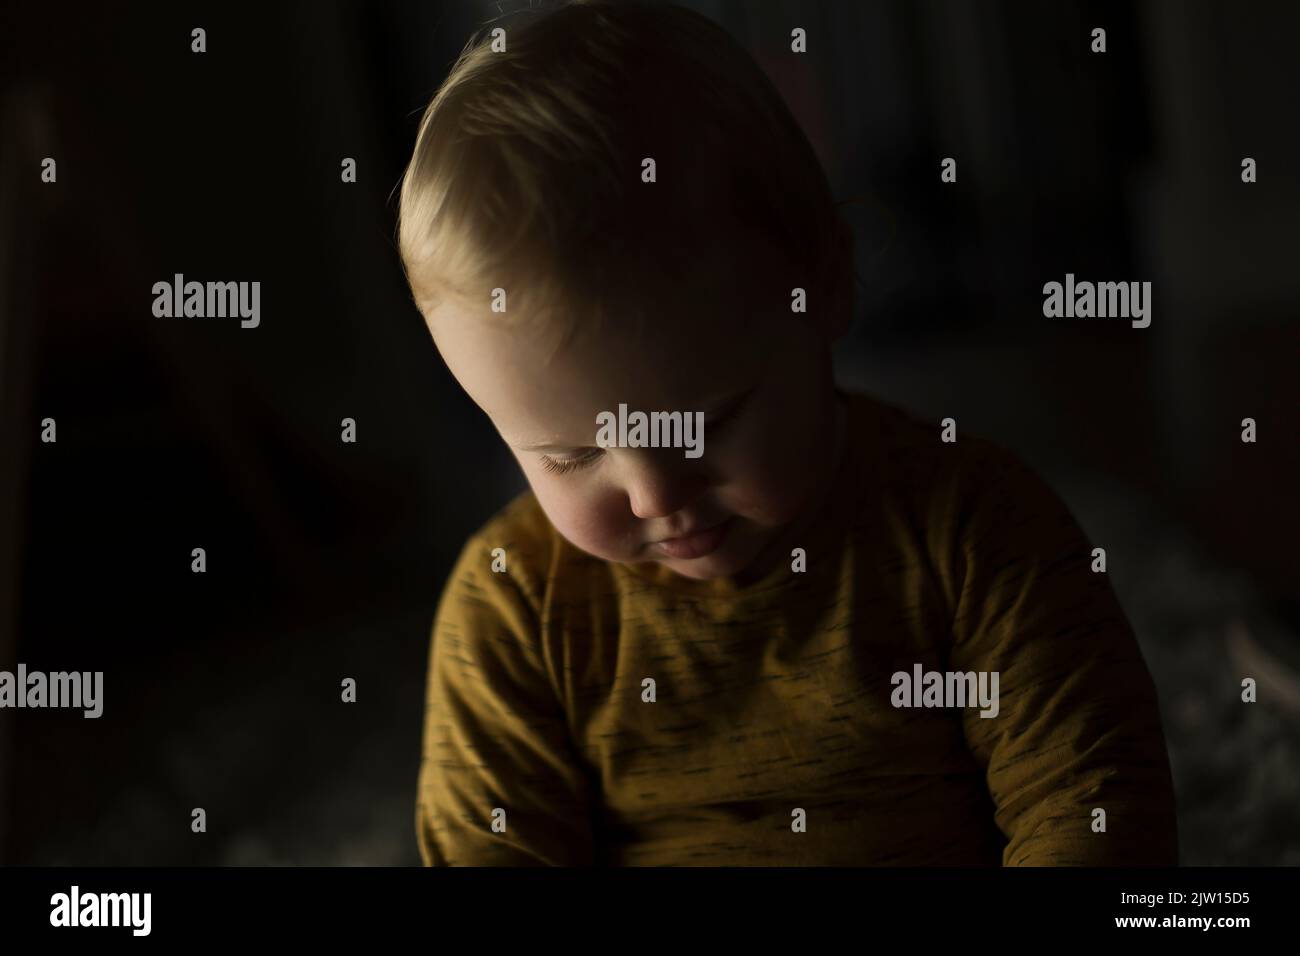 Junges Kleinkind, das in einem dunklen Raum nach unten schaut, Studiolicht verwendet. Stockfoto